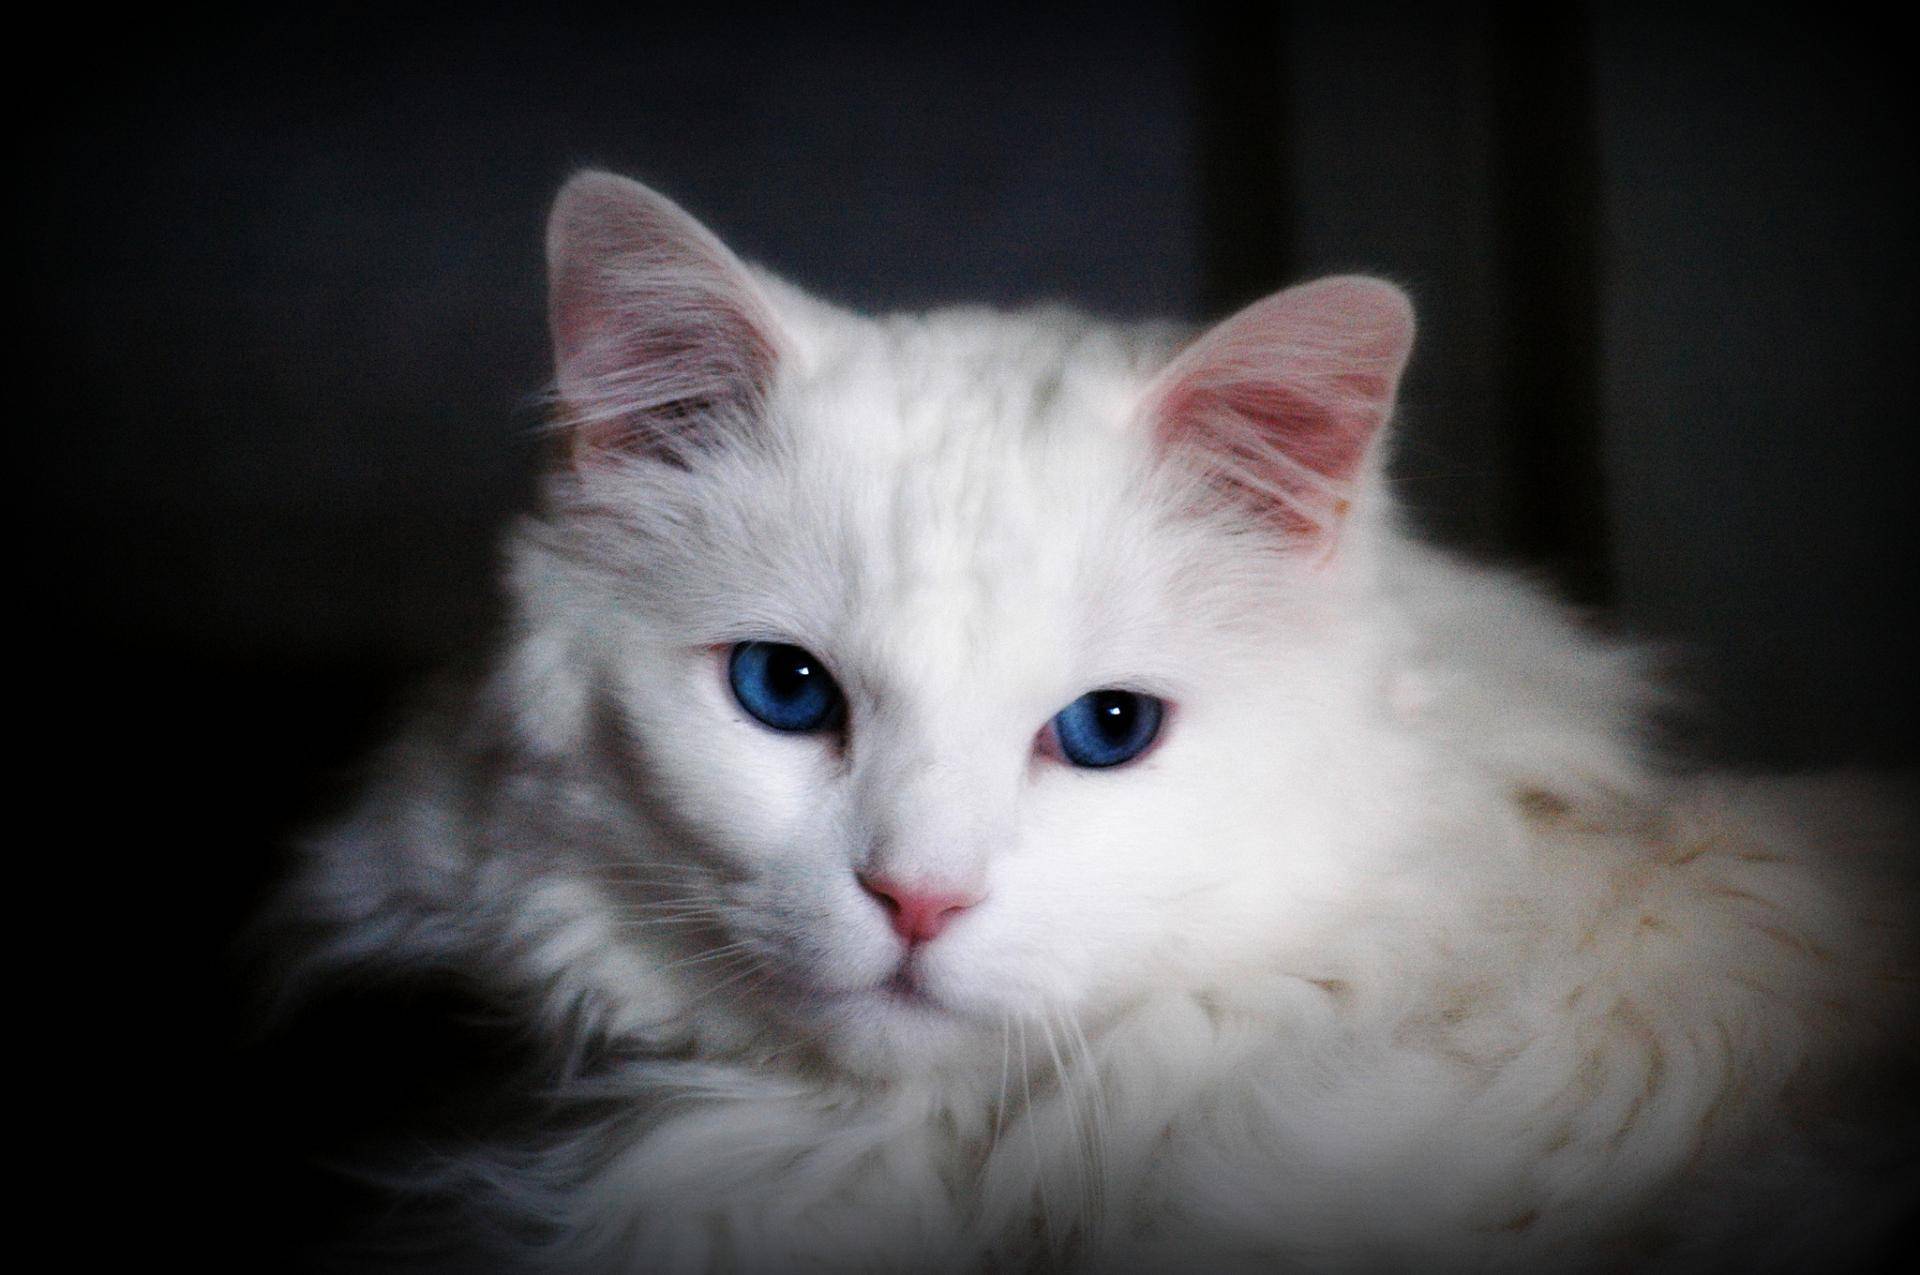 У каких пород кошек большие голубые глаза — фото, голубоглазые гладкошерстные кошки и котята, как называется порода с косыми глазами, есть ли рыжий кот с голубыми глазами